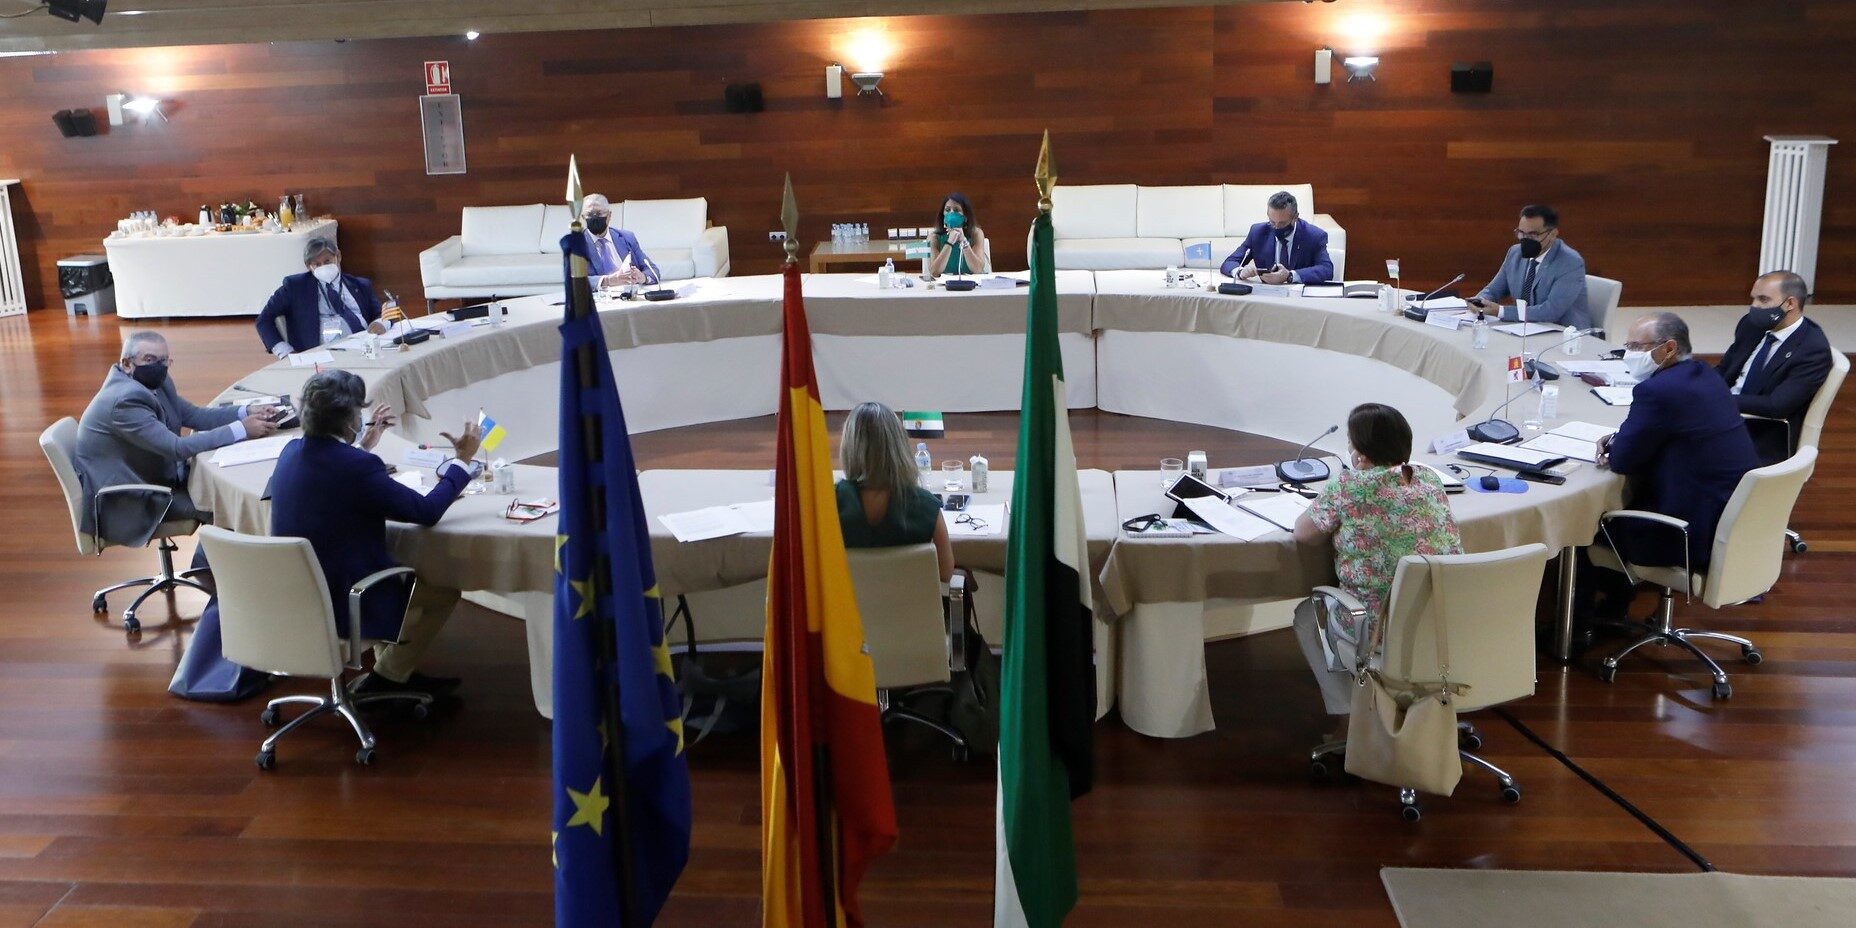 Blanca Martín preside la reunión del Plenario de la COPREPA que acoge la Asamblea de Extremadura